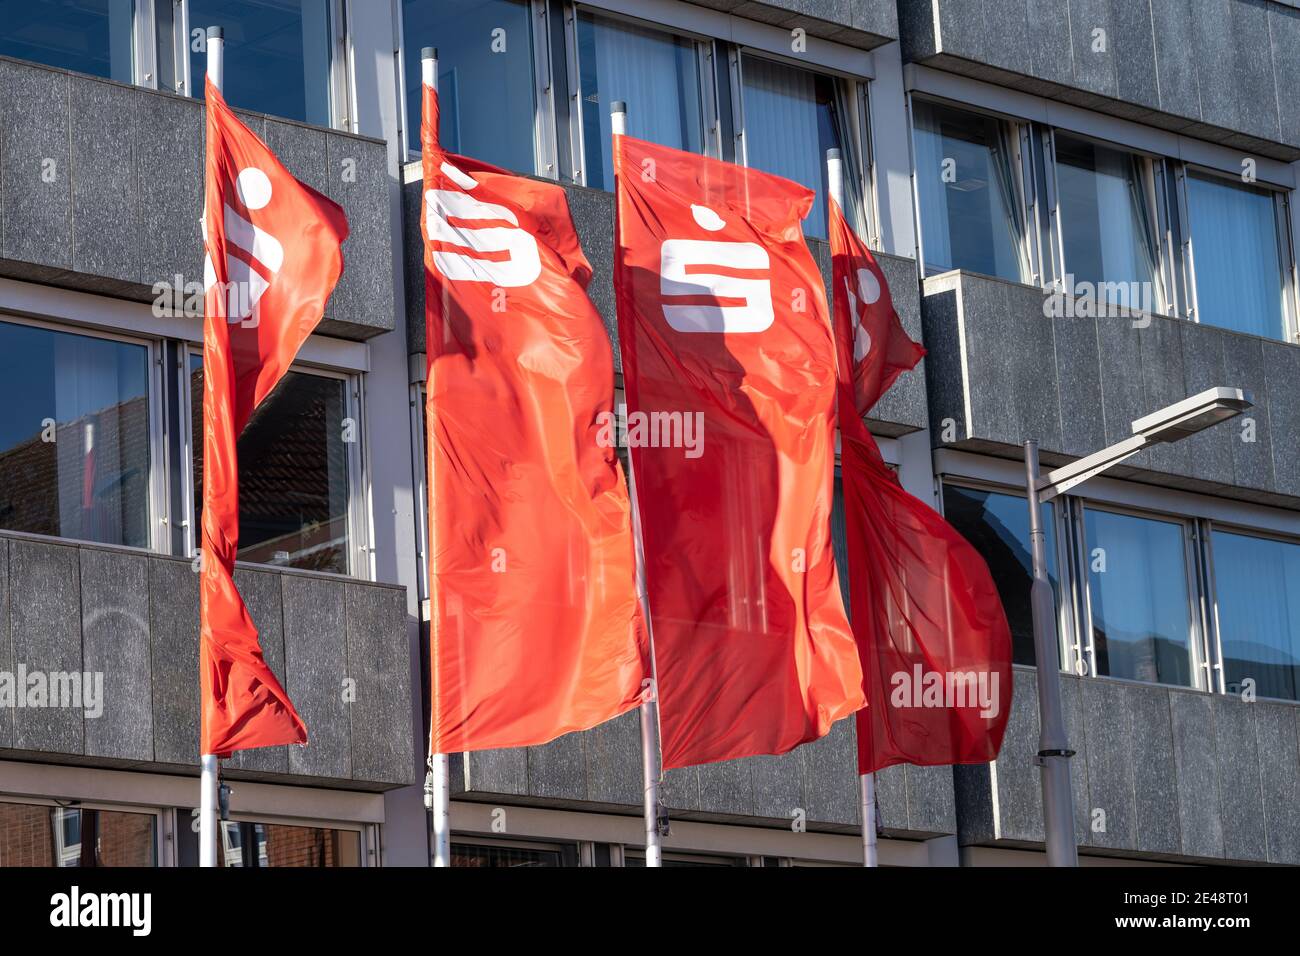 Sparkasse Bank German Stockfotos und -bilder Kaufen - Alamy